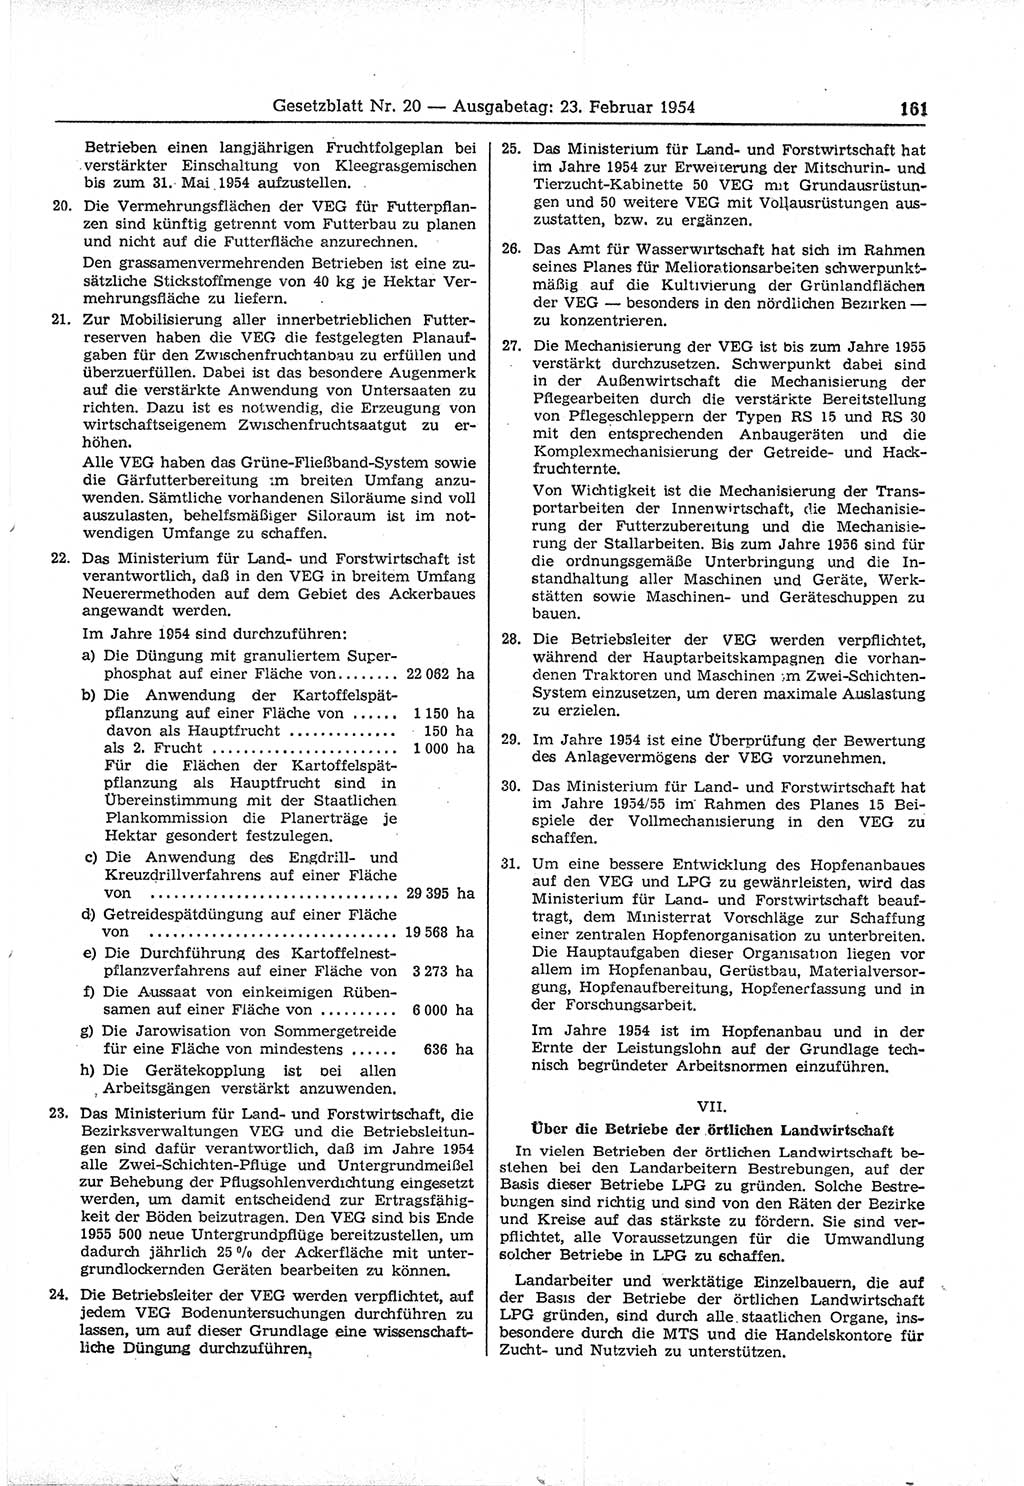 Gesetzblatt (GBl.) der Deutschen Demokratischen Republik (DDR) 1954, Seite 161 (GBl. DDR 1954, S. 161)